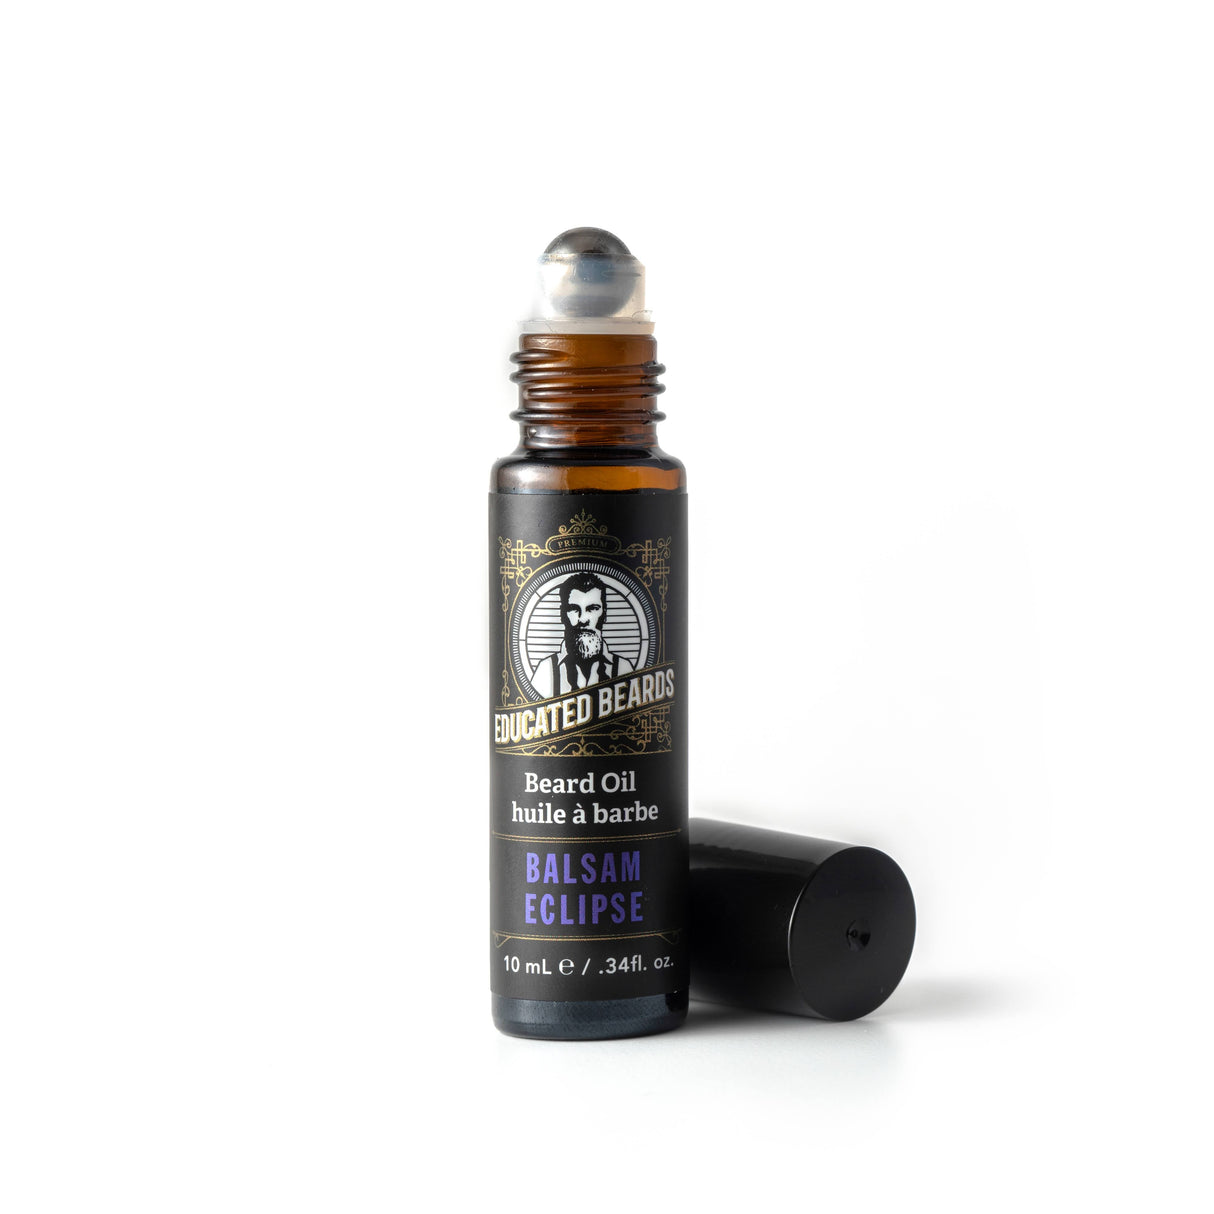 Balsam Eclipse Beard Oil